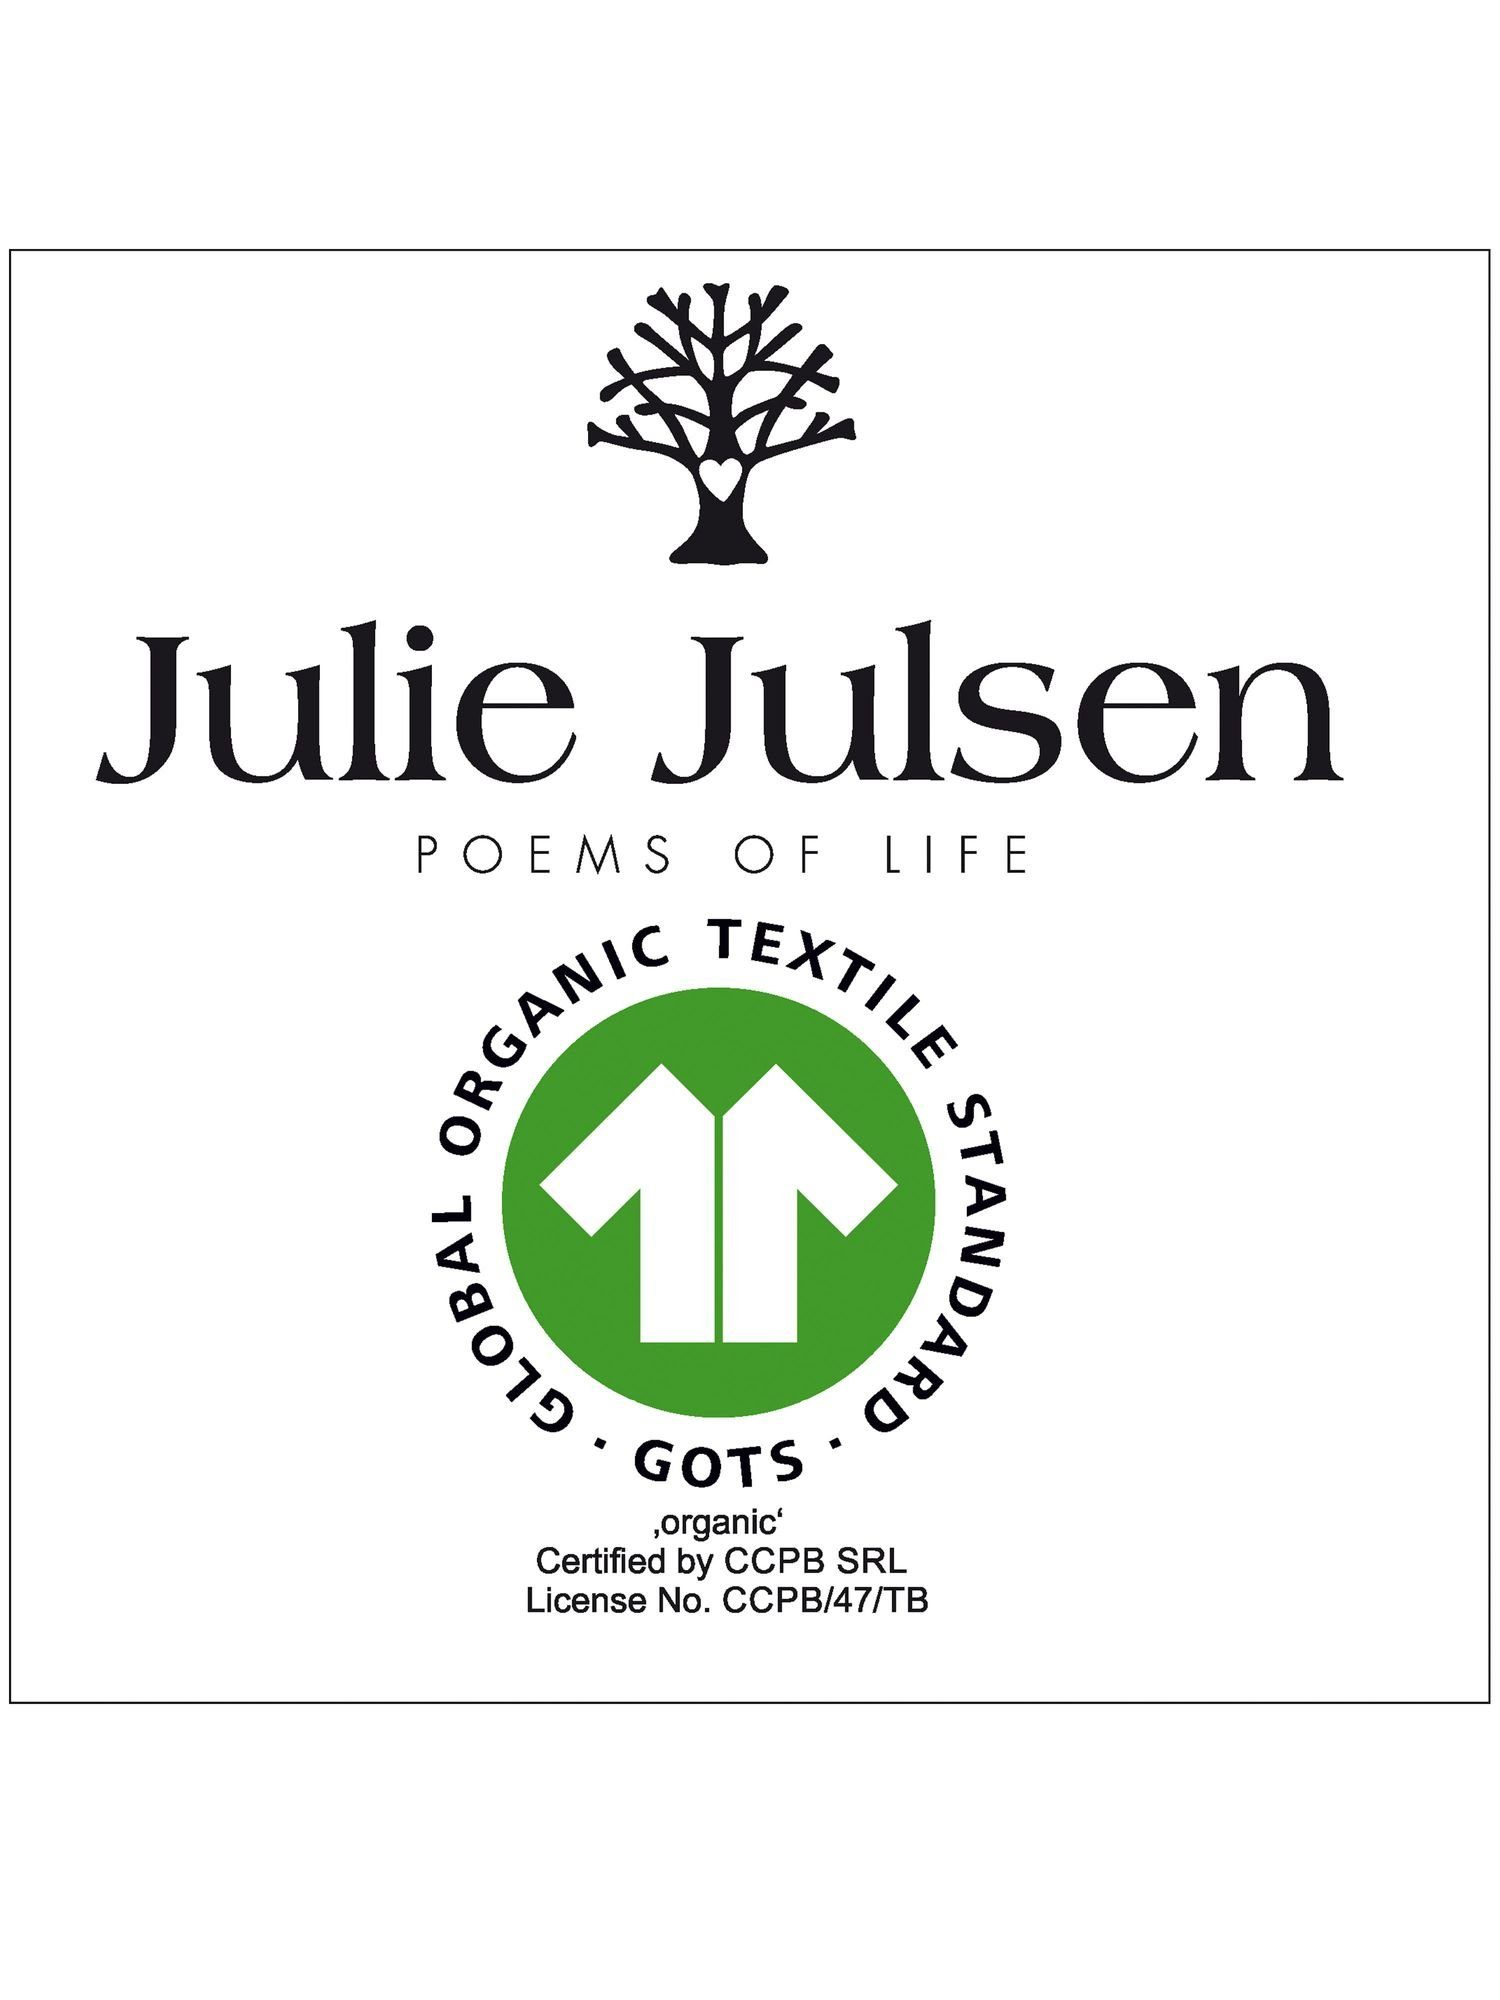 Julsen Julie cm, x 1-Handtuch-Sand-Handtuch Handtuch (1-St) 50 Bio-Baumwolle 100